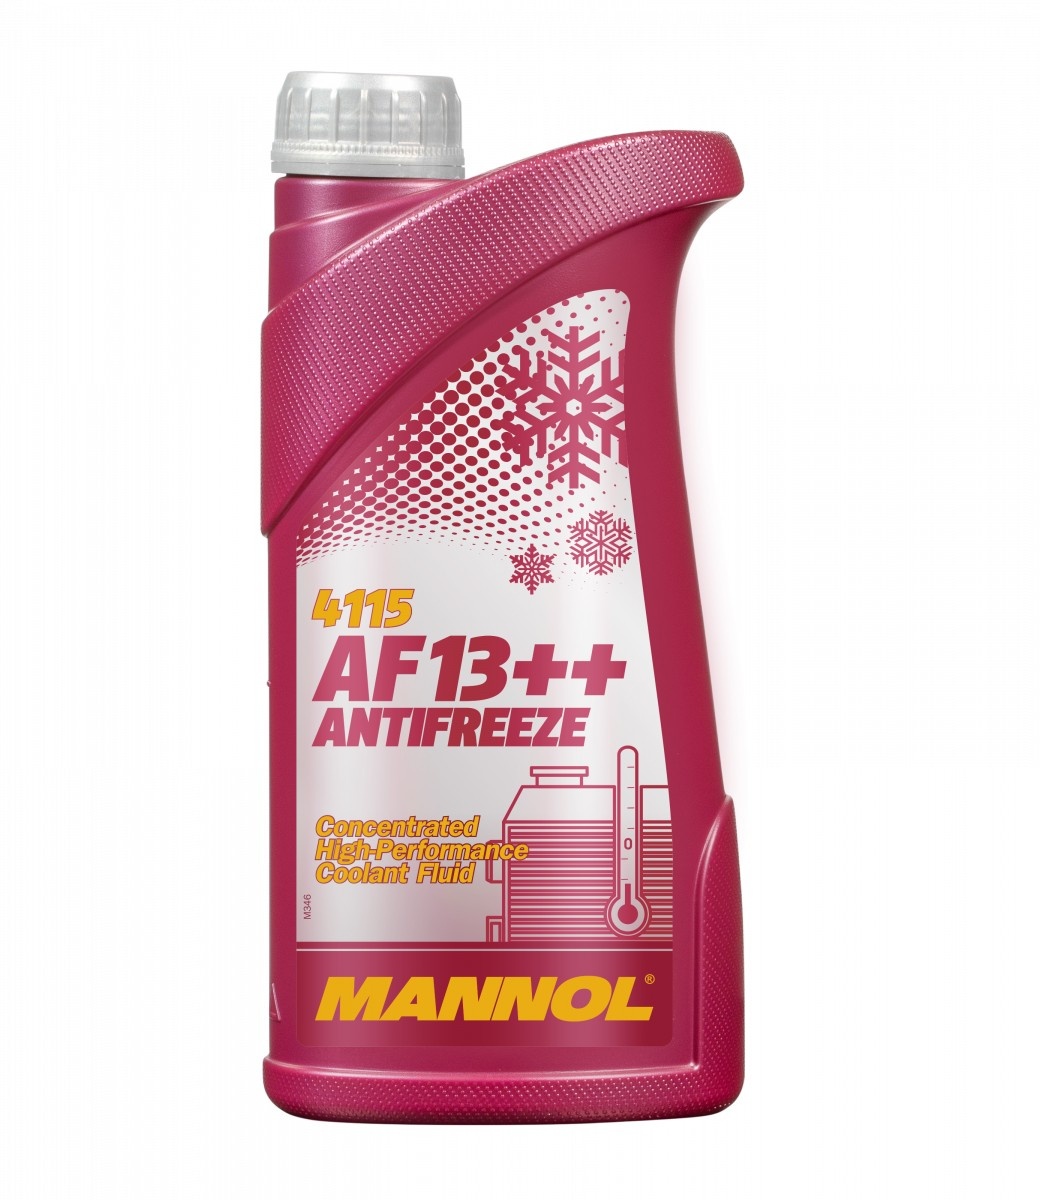 Антифриз Mannol AF13++ Red 4115 1L